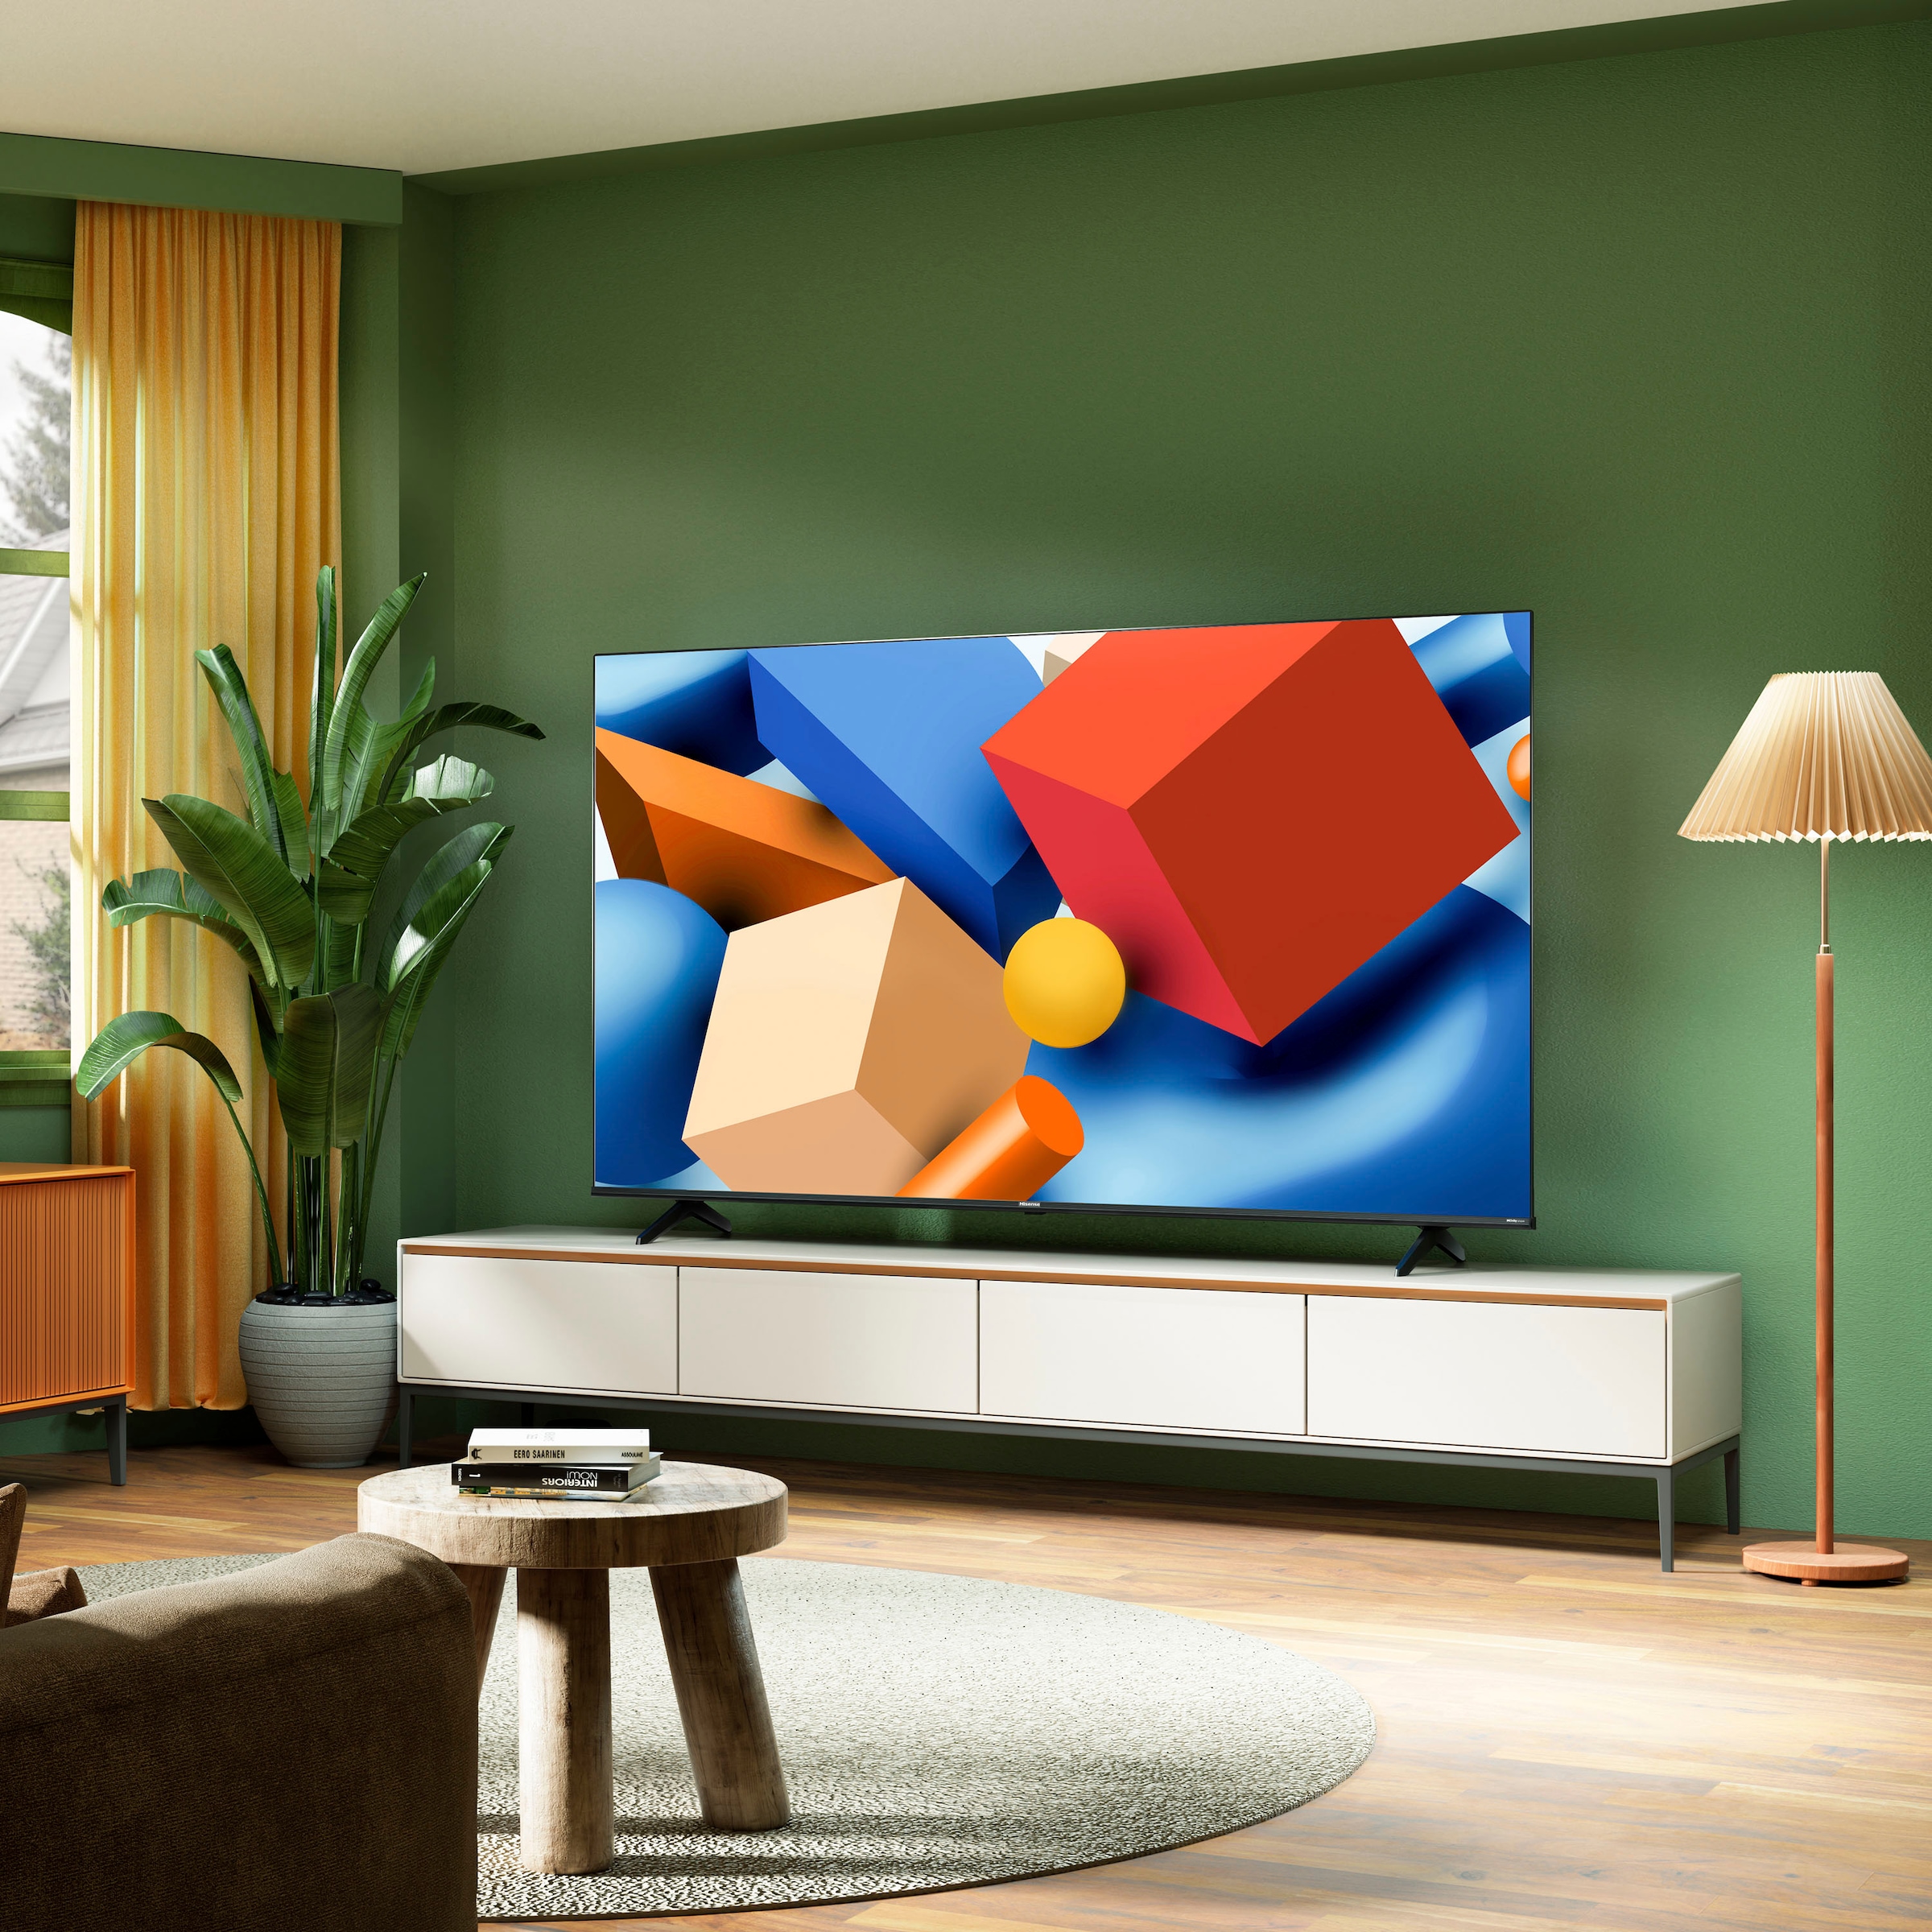 Hisense LED-Fernseher, 164 cm/65 Zoll, 4K Ultra HD, Smart-TV, Smart-TV, Dolby Vision, Triple Tuner DVB-C/S/S2/T/T2